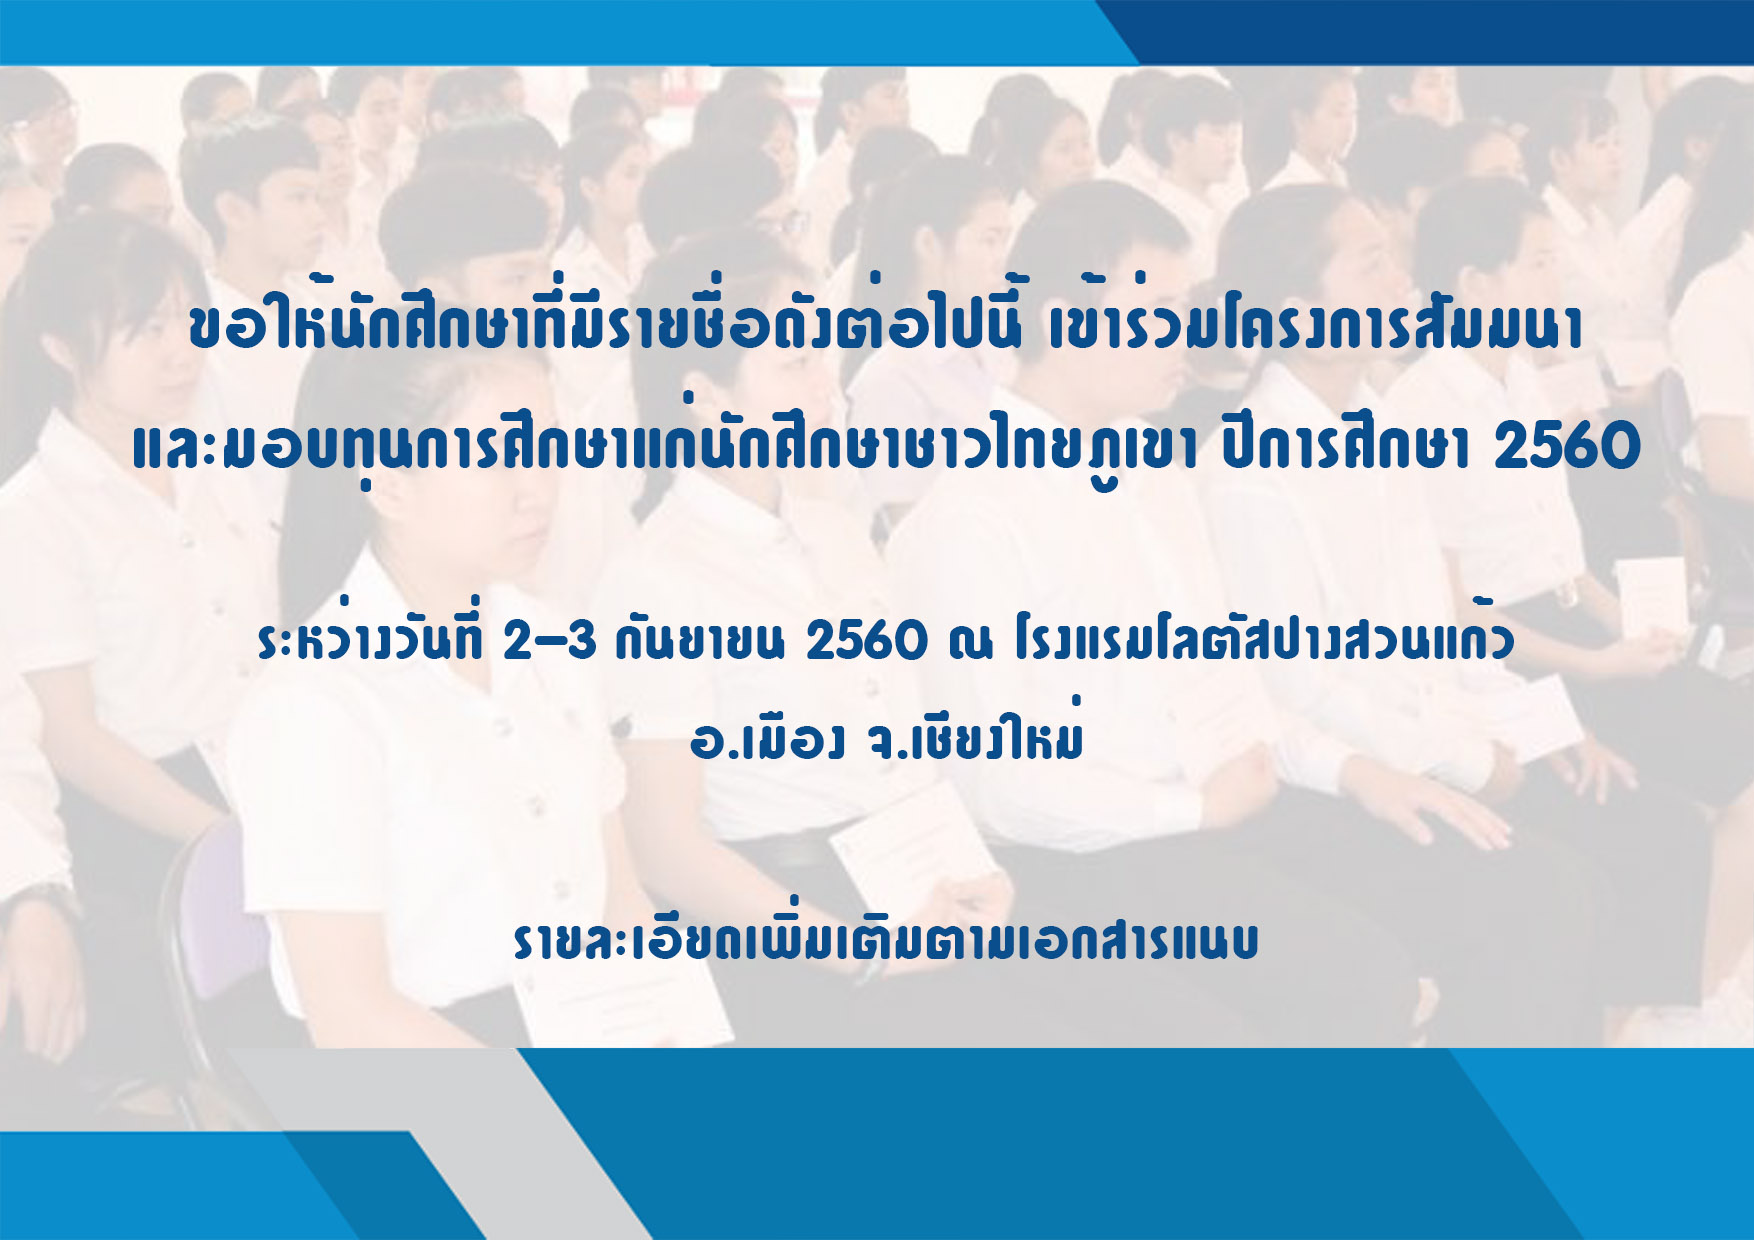 ขอให้นักศึกษาที่มีรายชื่อดังต่อไปนี้ เข้าร่วมโครงการสัมมนา และมอบทุนการศึกษาแก่นักศึกษาชาวไทยภูเขา ปีการศึกษา 2560